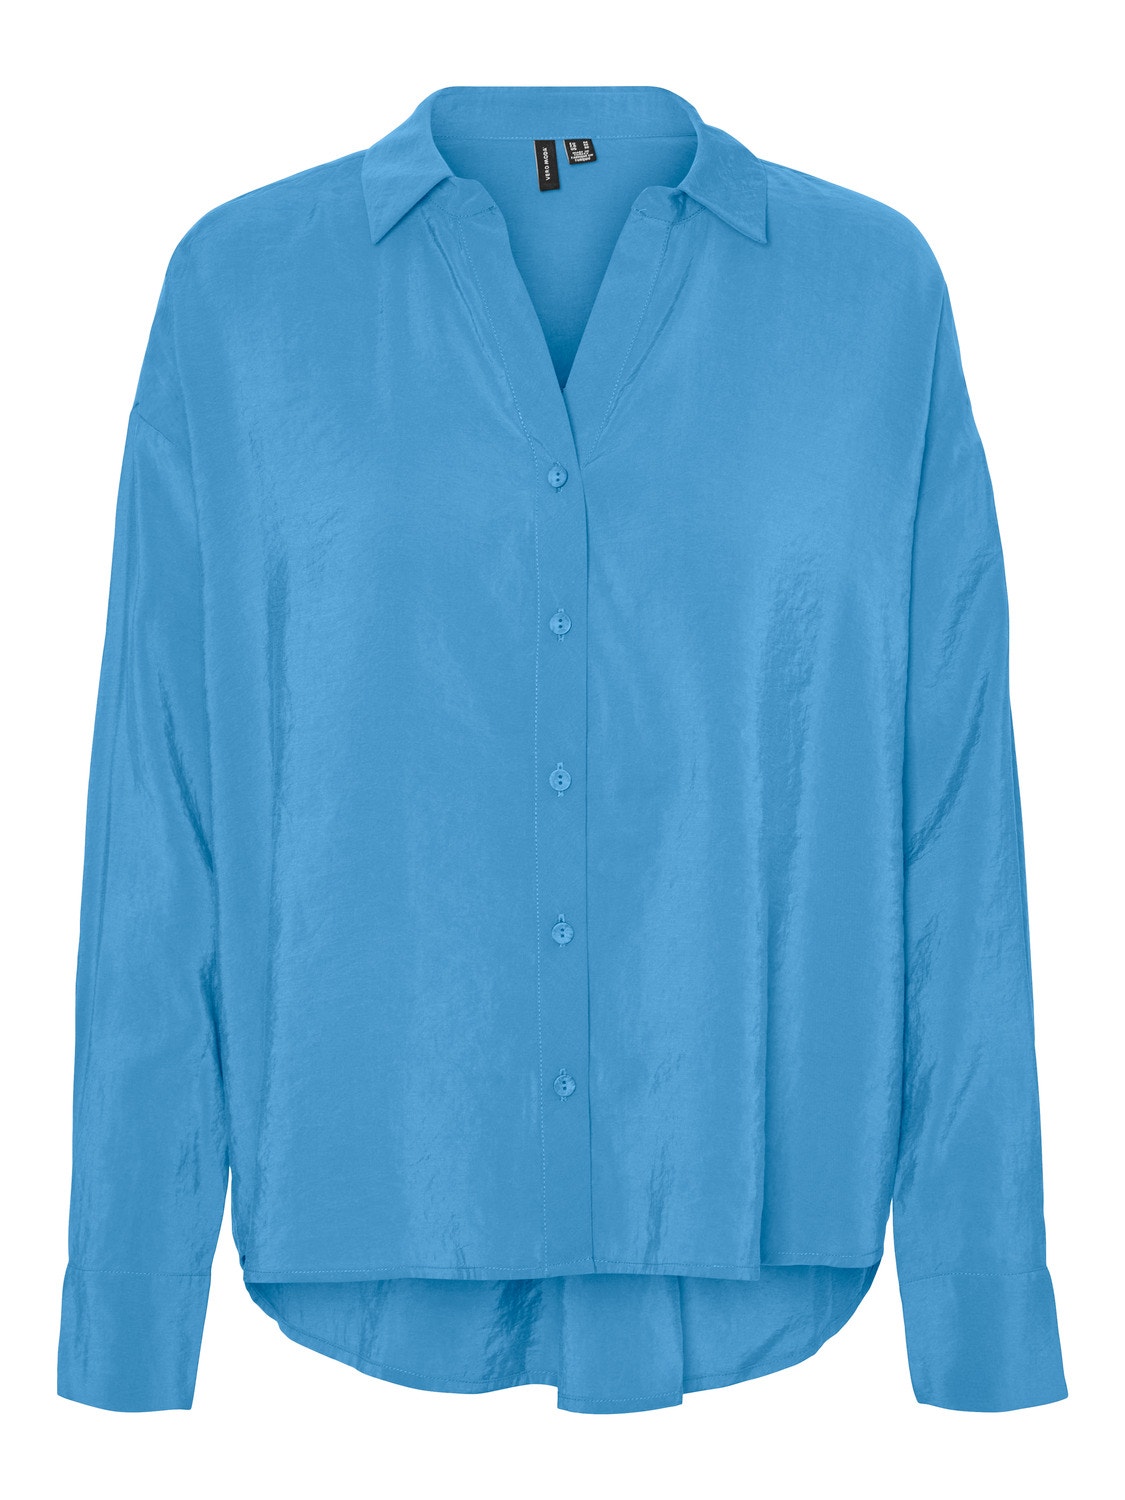 Vero Moda VMQUEENY Shirt -Bonnie Blue - 10289349